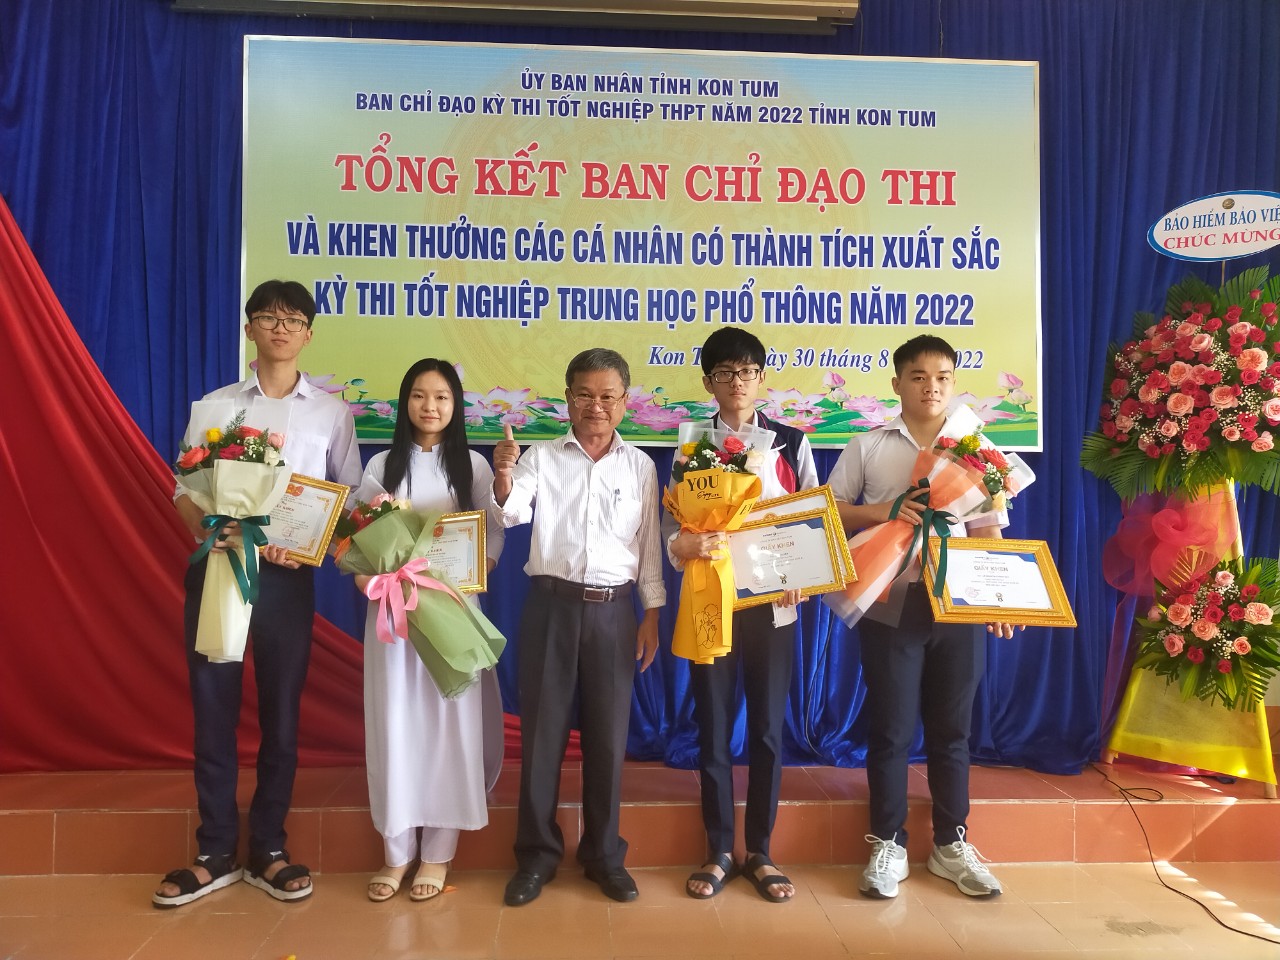 Thầy Nguyễn Ngọc Duyệt - Hiệu trưởng nhà trường chụp ảnh lưu niệm cùng các học sinh đạt kết quả cao trong kỳ thi TN THPT 2022